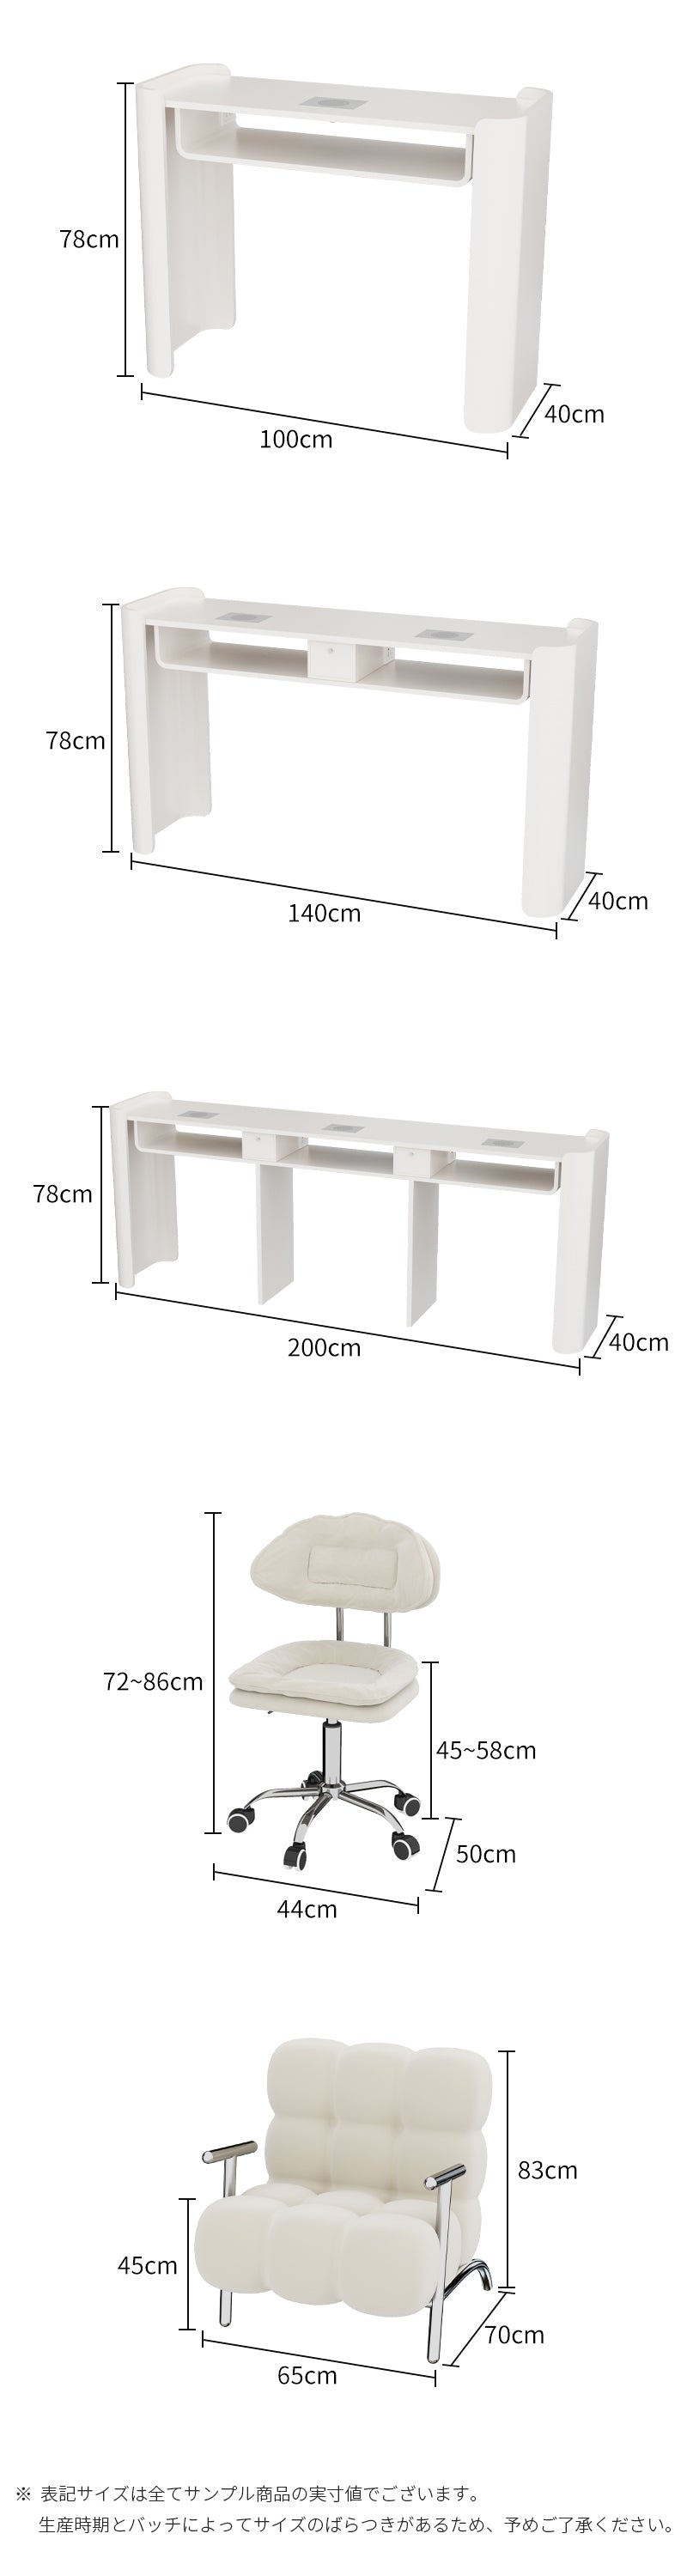 OFFINEO公式 | ネイルテーブル デザイン モダン シンプル 商品サイズ詳細図